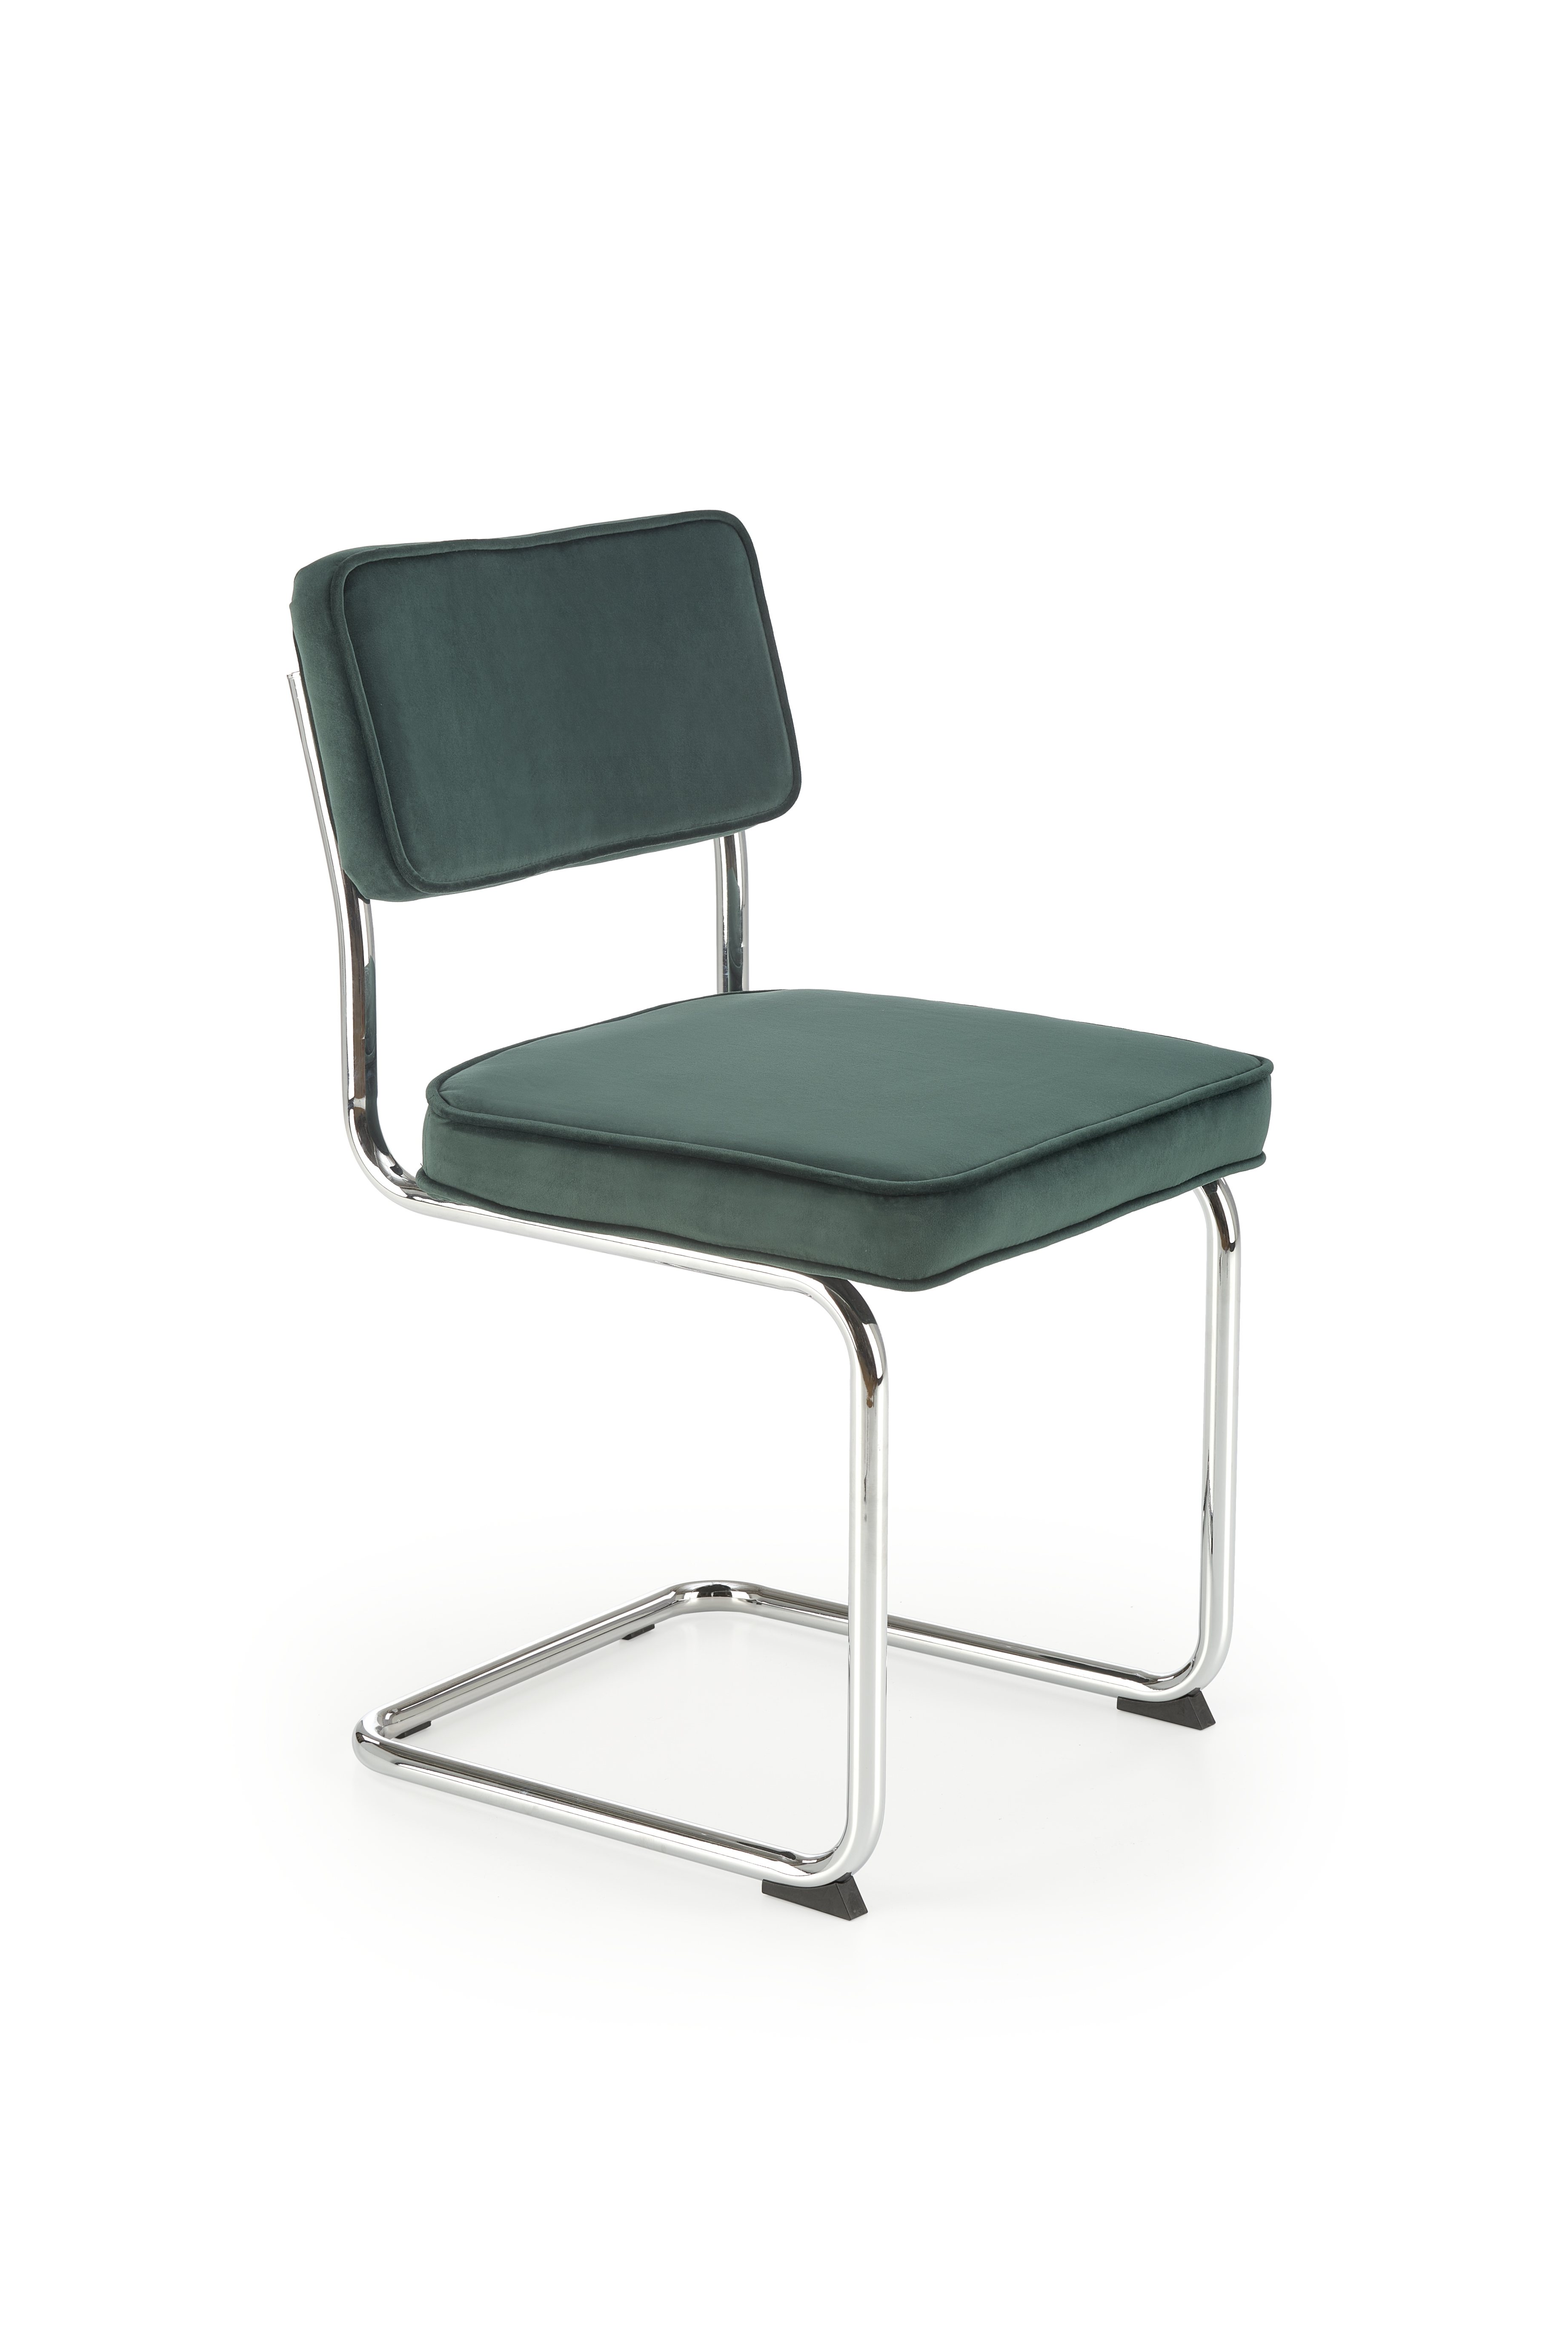 K510 Židle tmavý Zelený k510 Židle tmavý Zelený